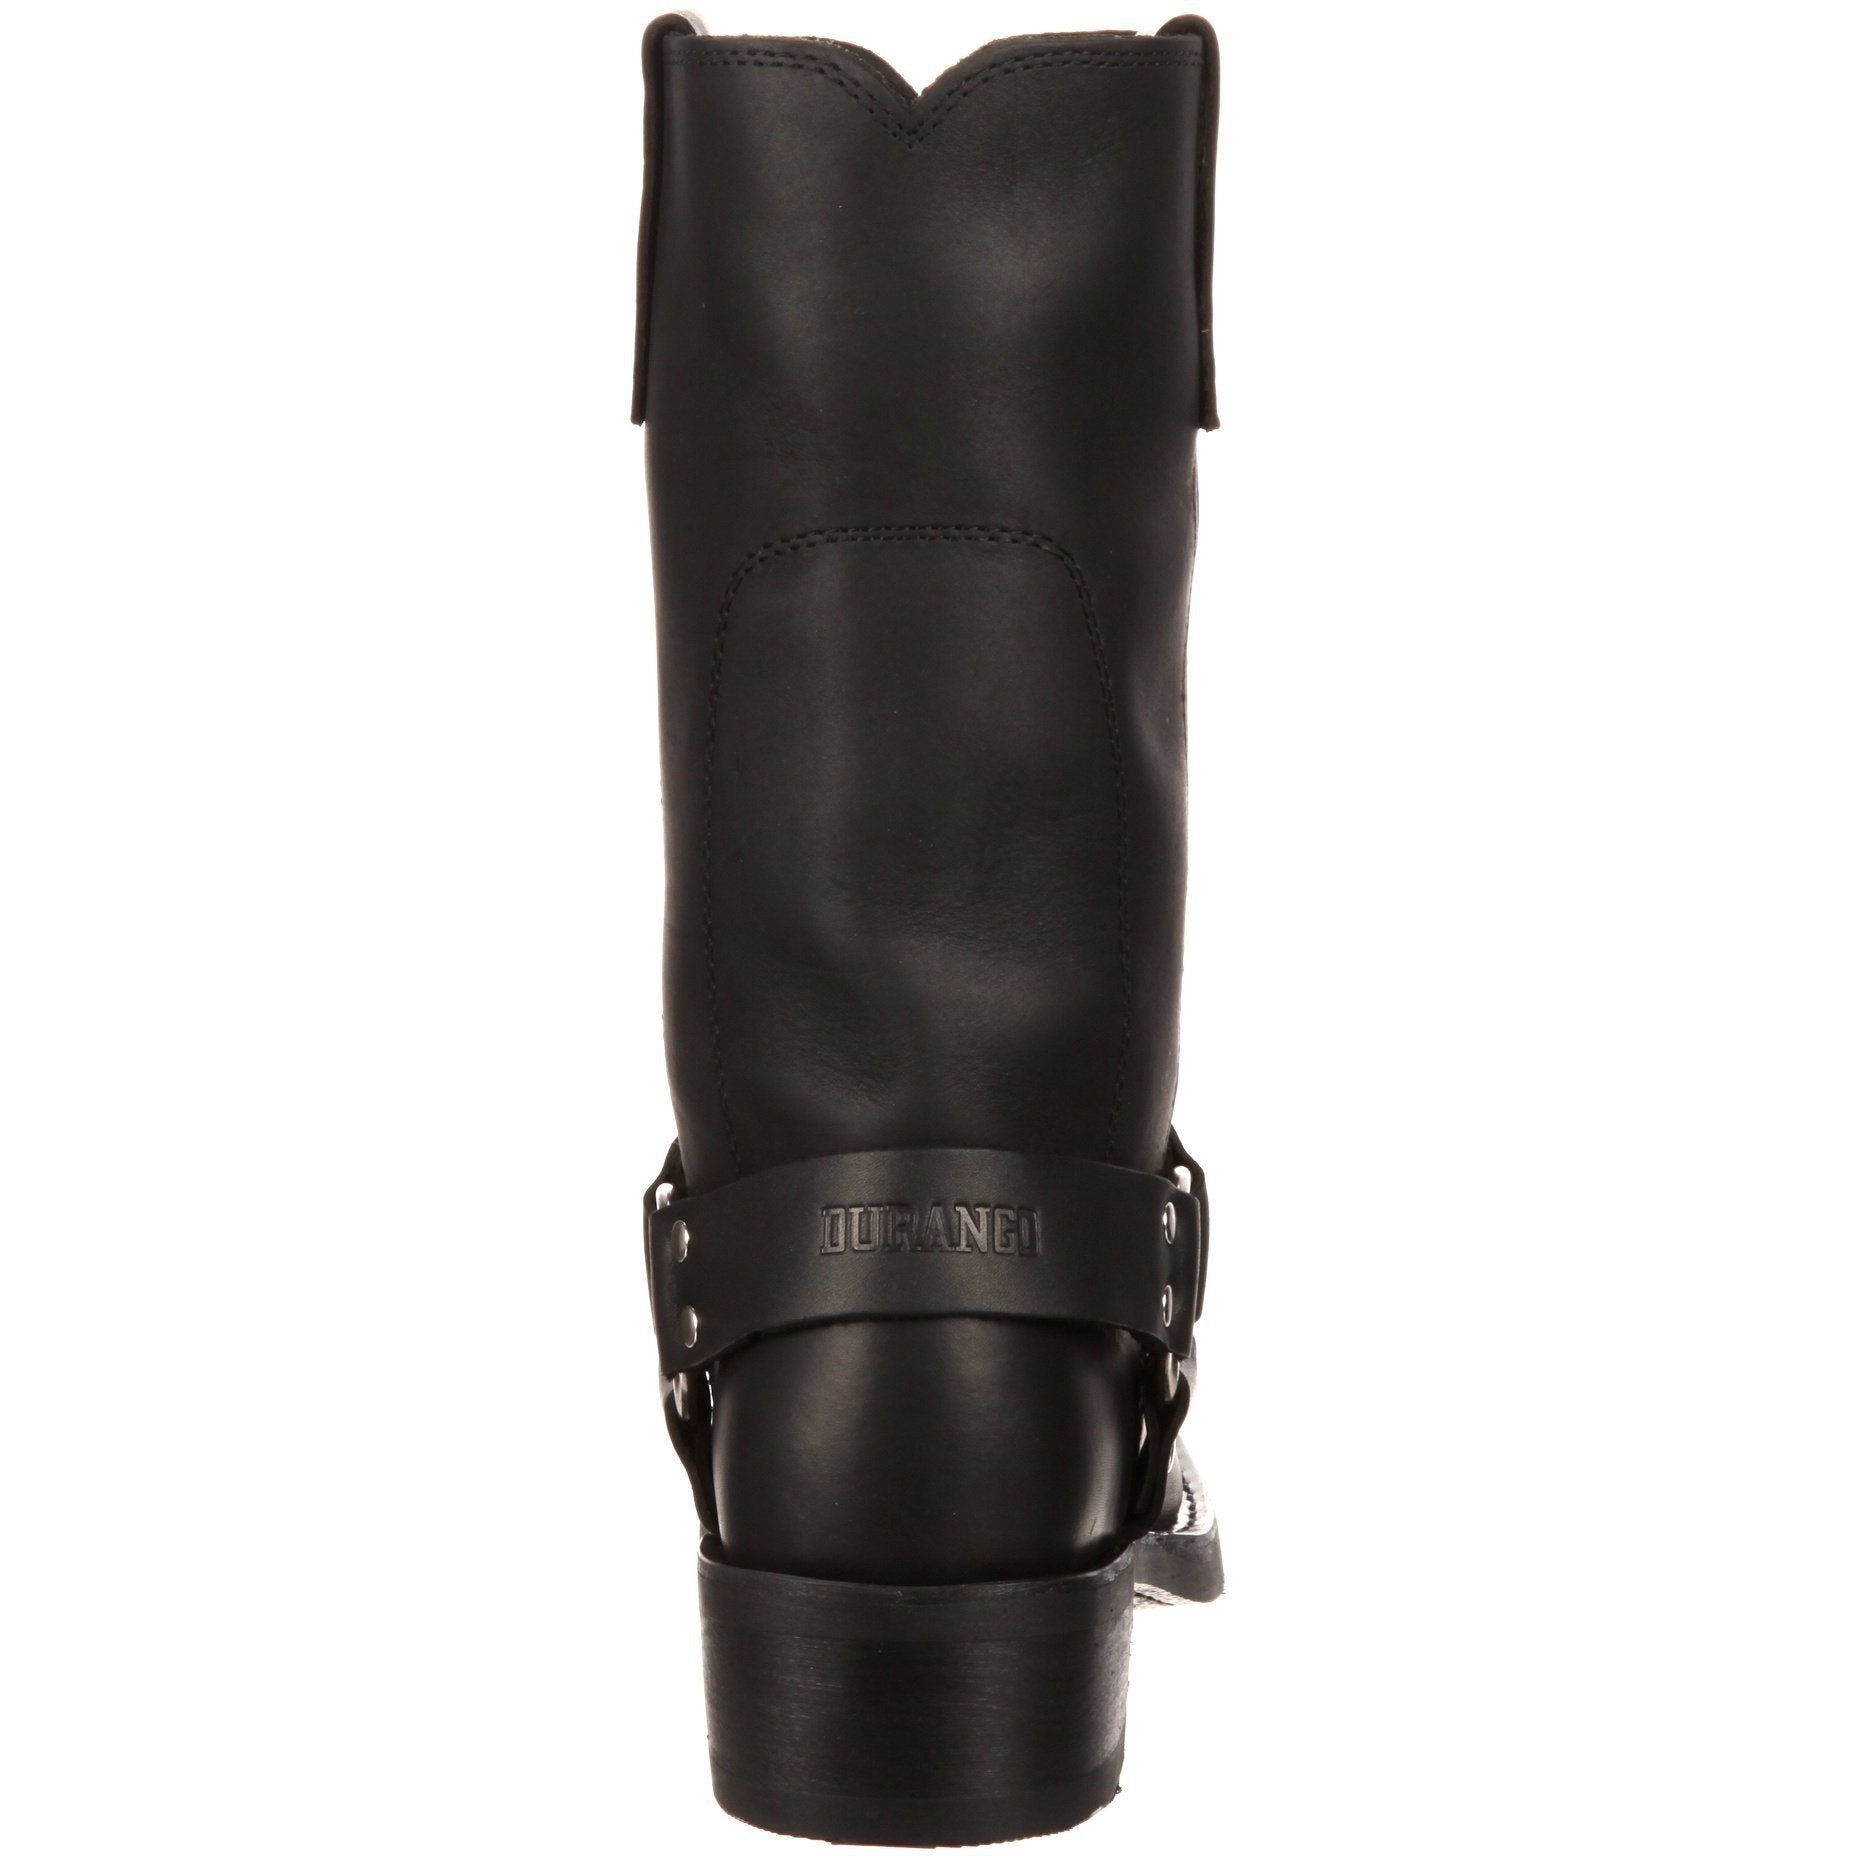 Durango Women's Harness 10" Snoot Toe Western Boot - Black - RD510  - Overlook Boots